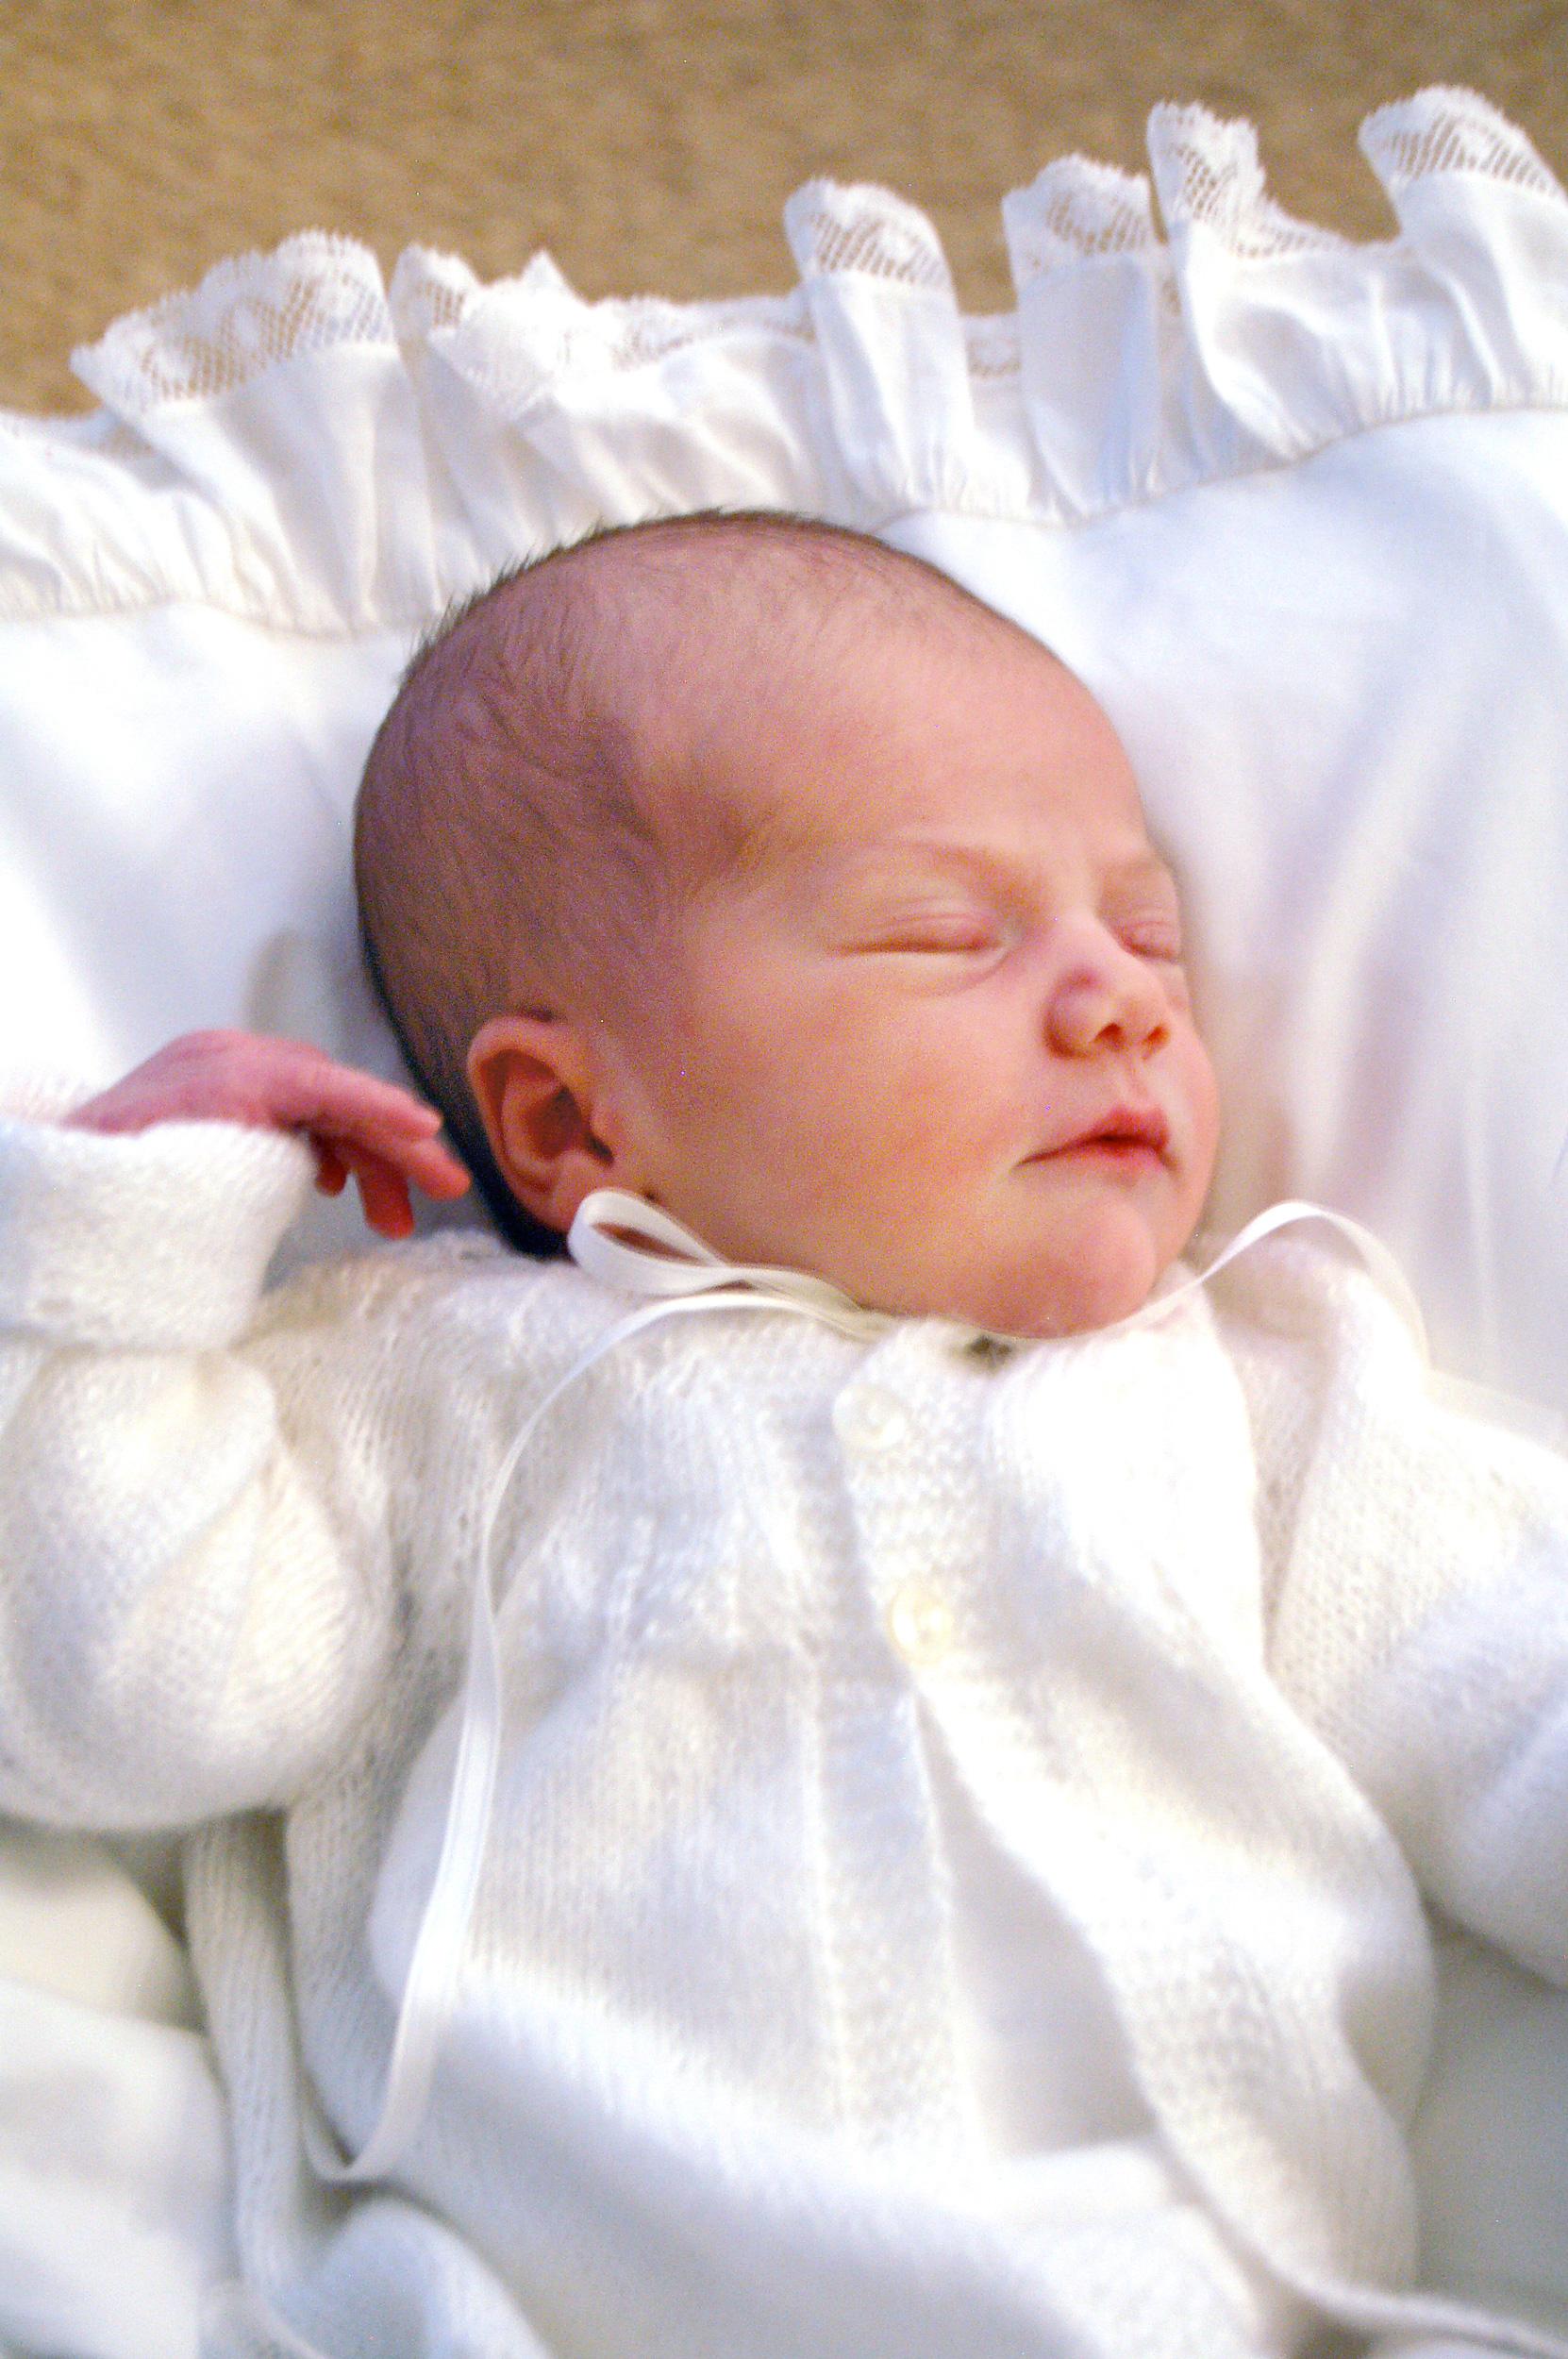 2012 En av de första officiella bilderna på prinsessan Estelle som föddes 23/2 2012.